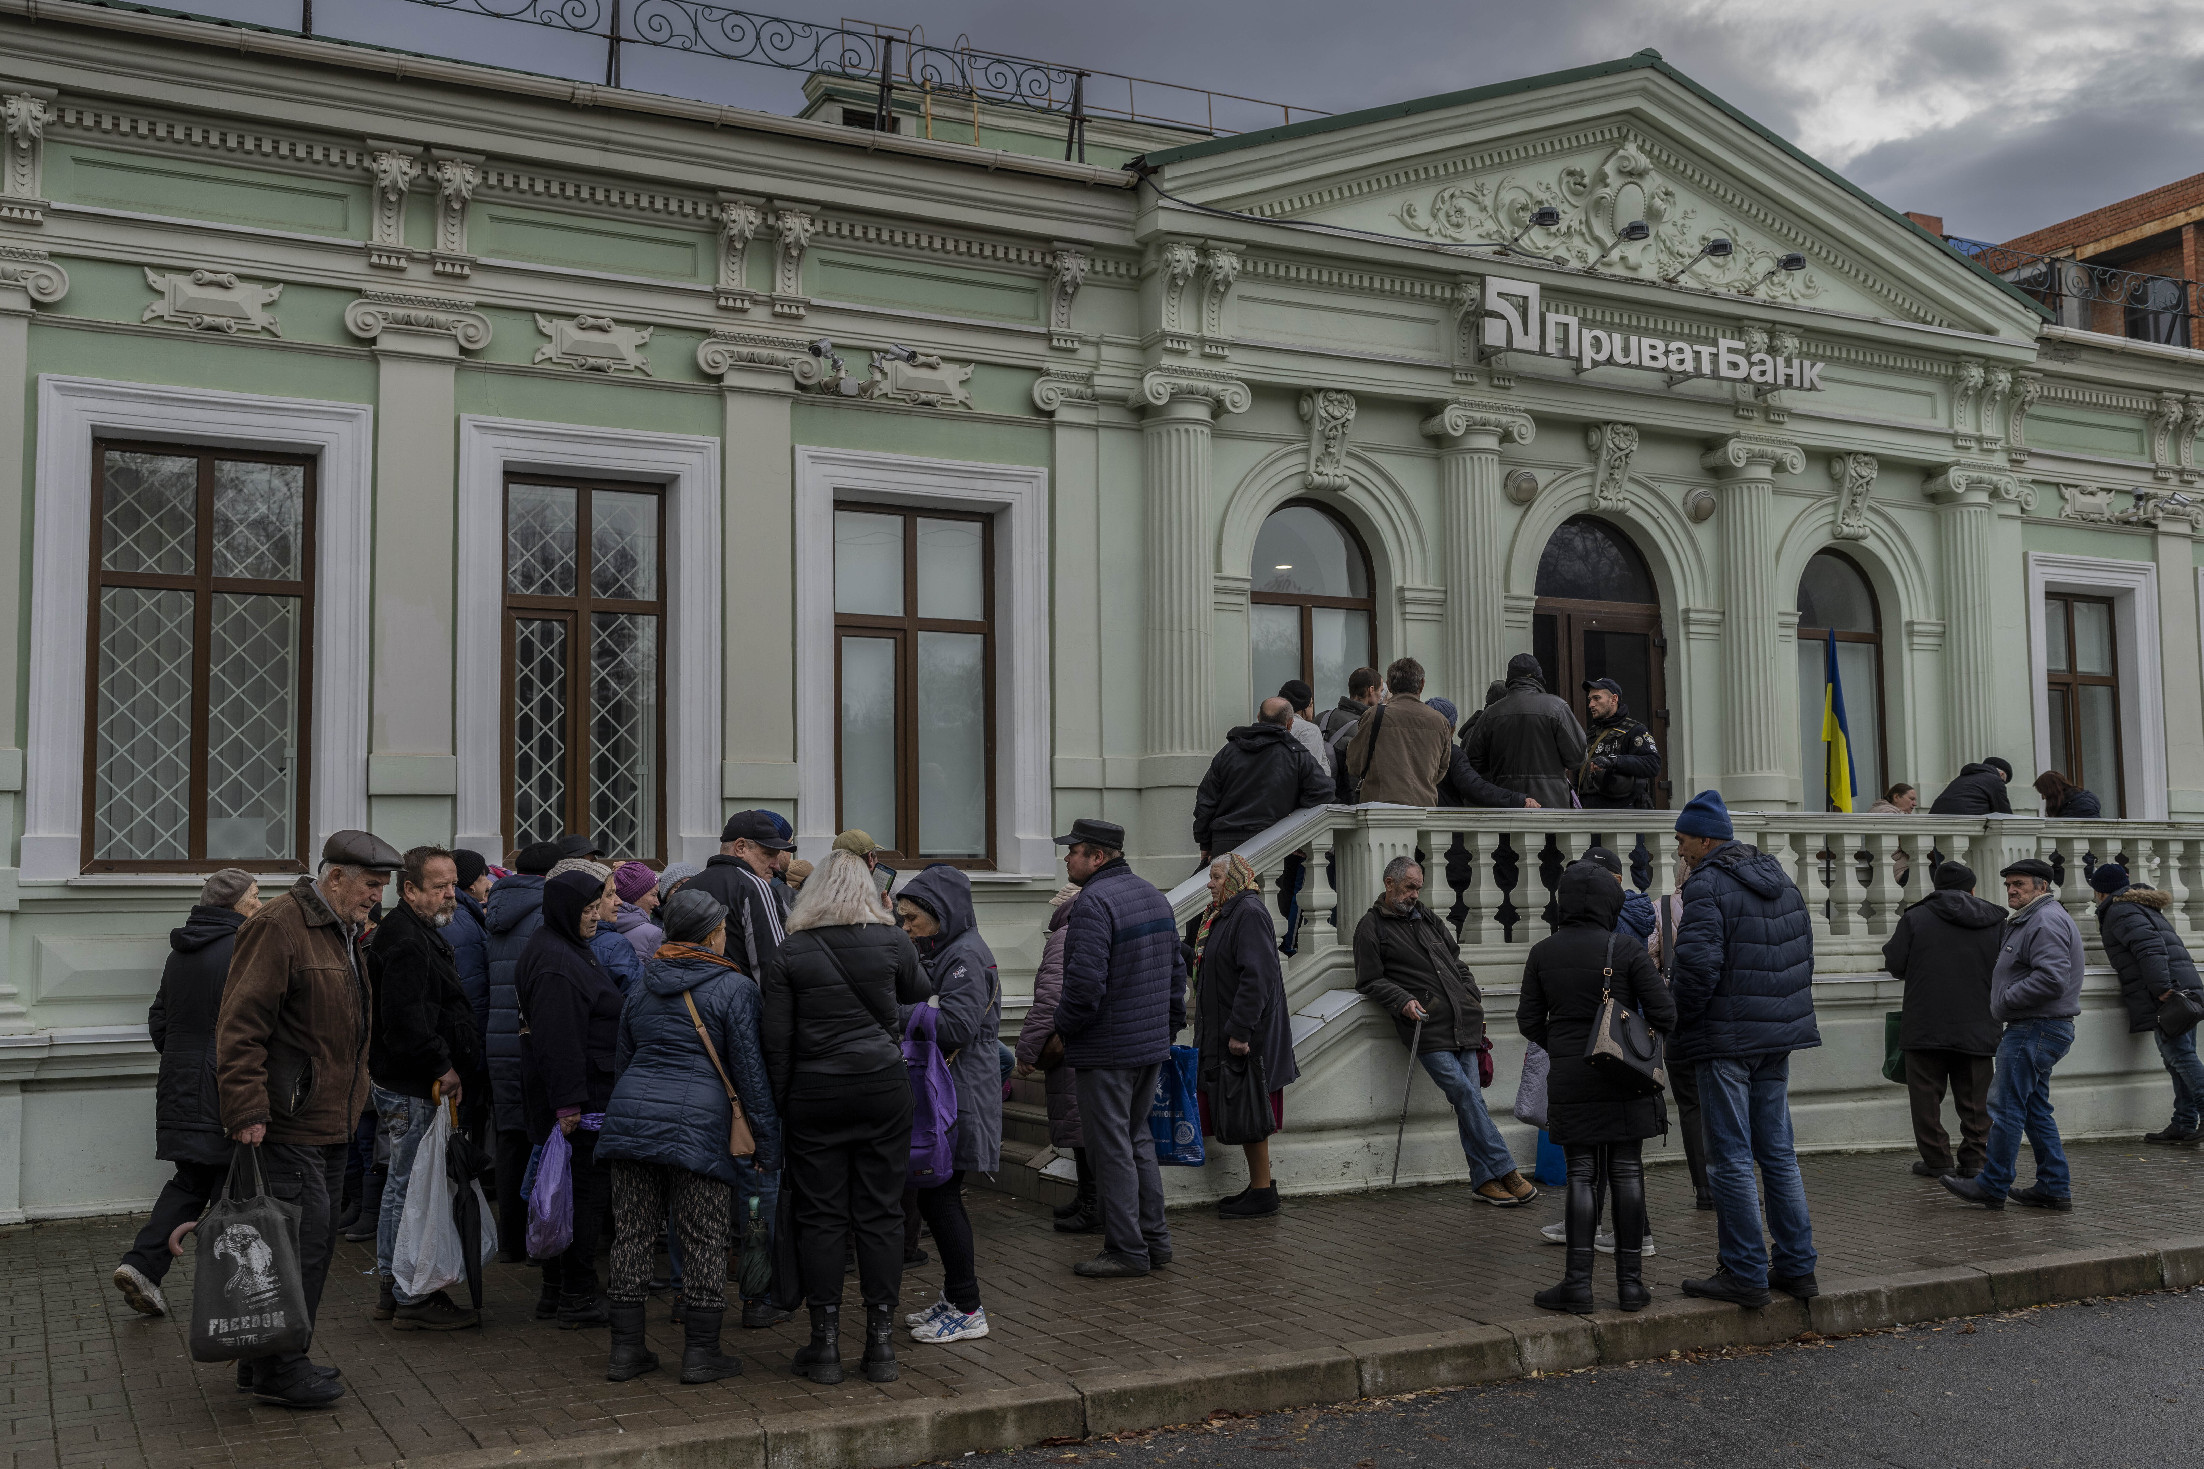 Kivezetik a hrivnyát Herszon megye orosz megszállás alatti területein januártól